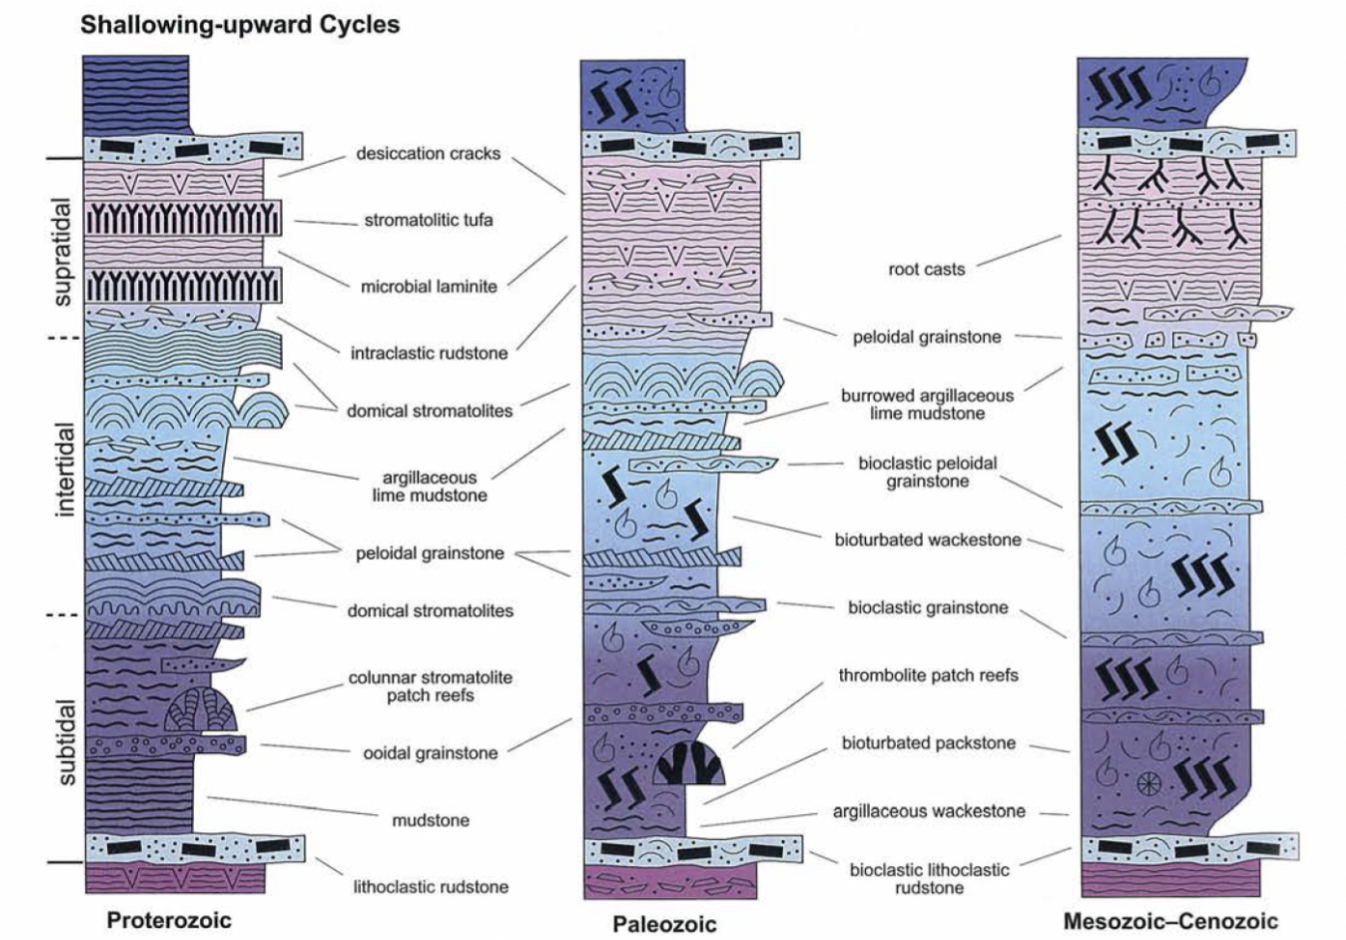 <ol><li><p>Appearance of bioclasts (Early Paleozoic)</p></li><li><p>Decline of stromatolites </p></li><li><p>Evolution of angiosperms</p></li><li><p>Evolution of deep-burrowing crustaceans</p></li></ol>